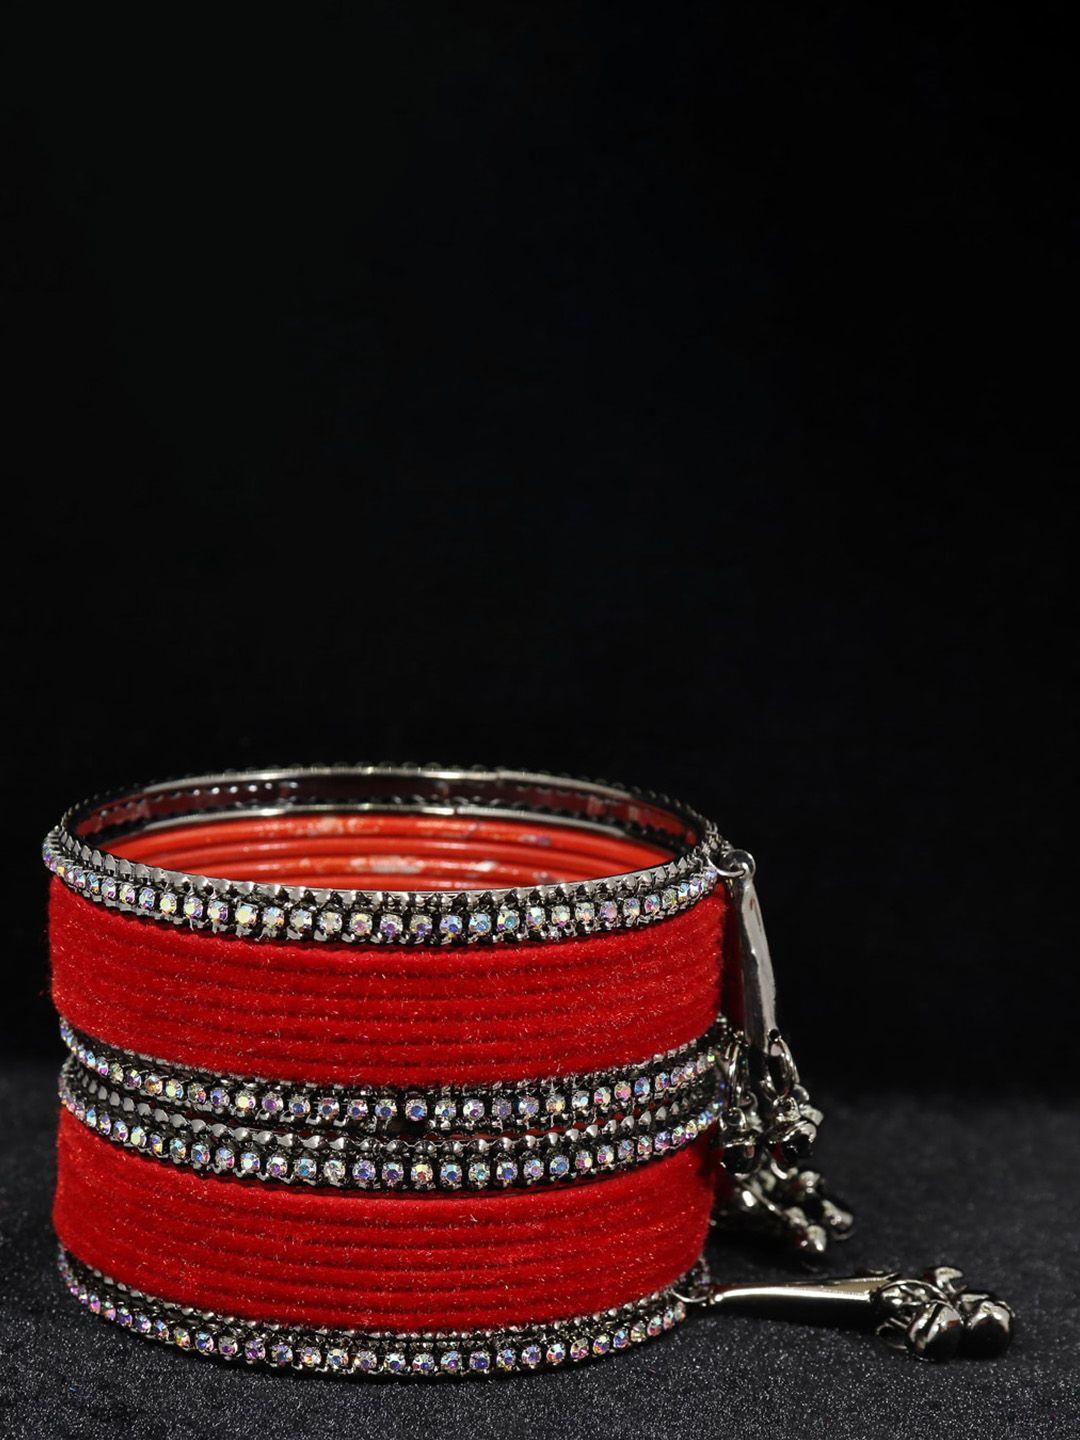 nmii set of 16 zircon gemstone studded bangles